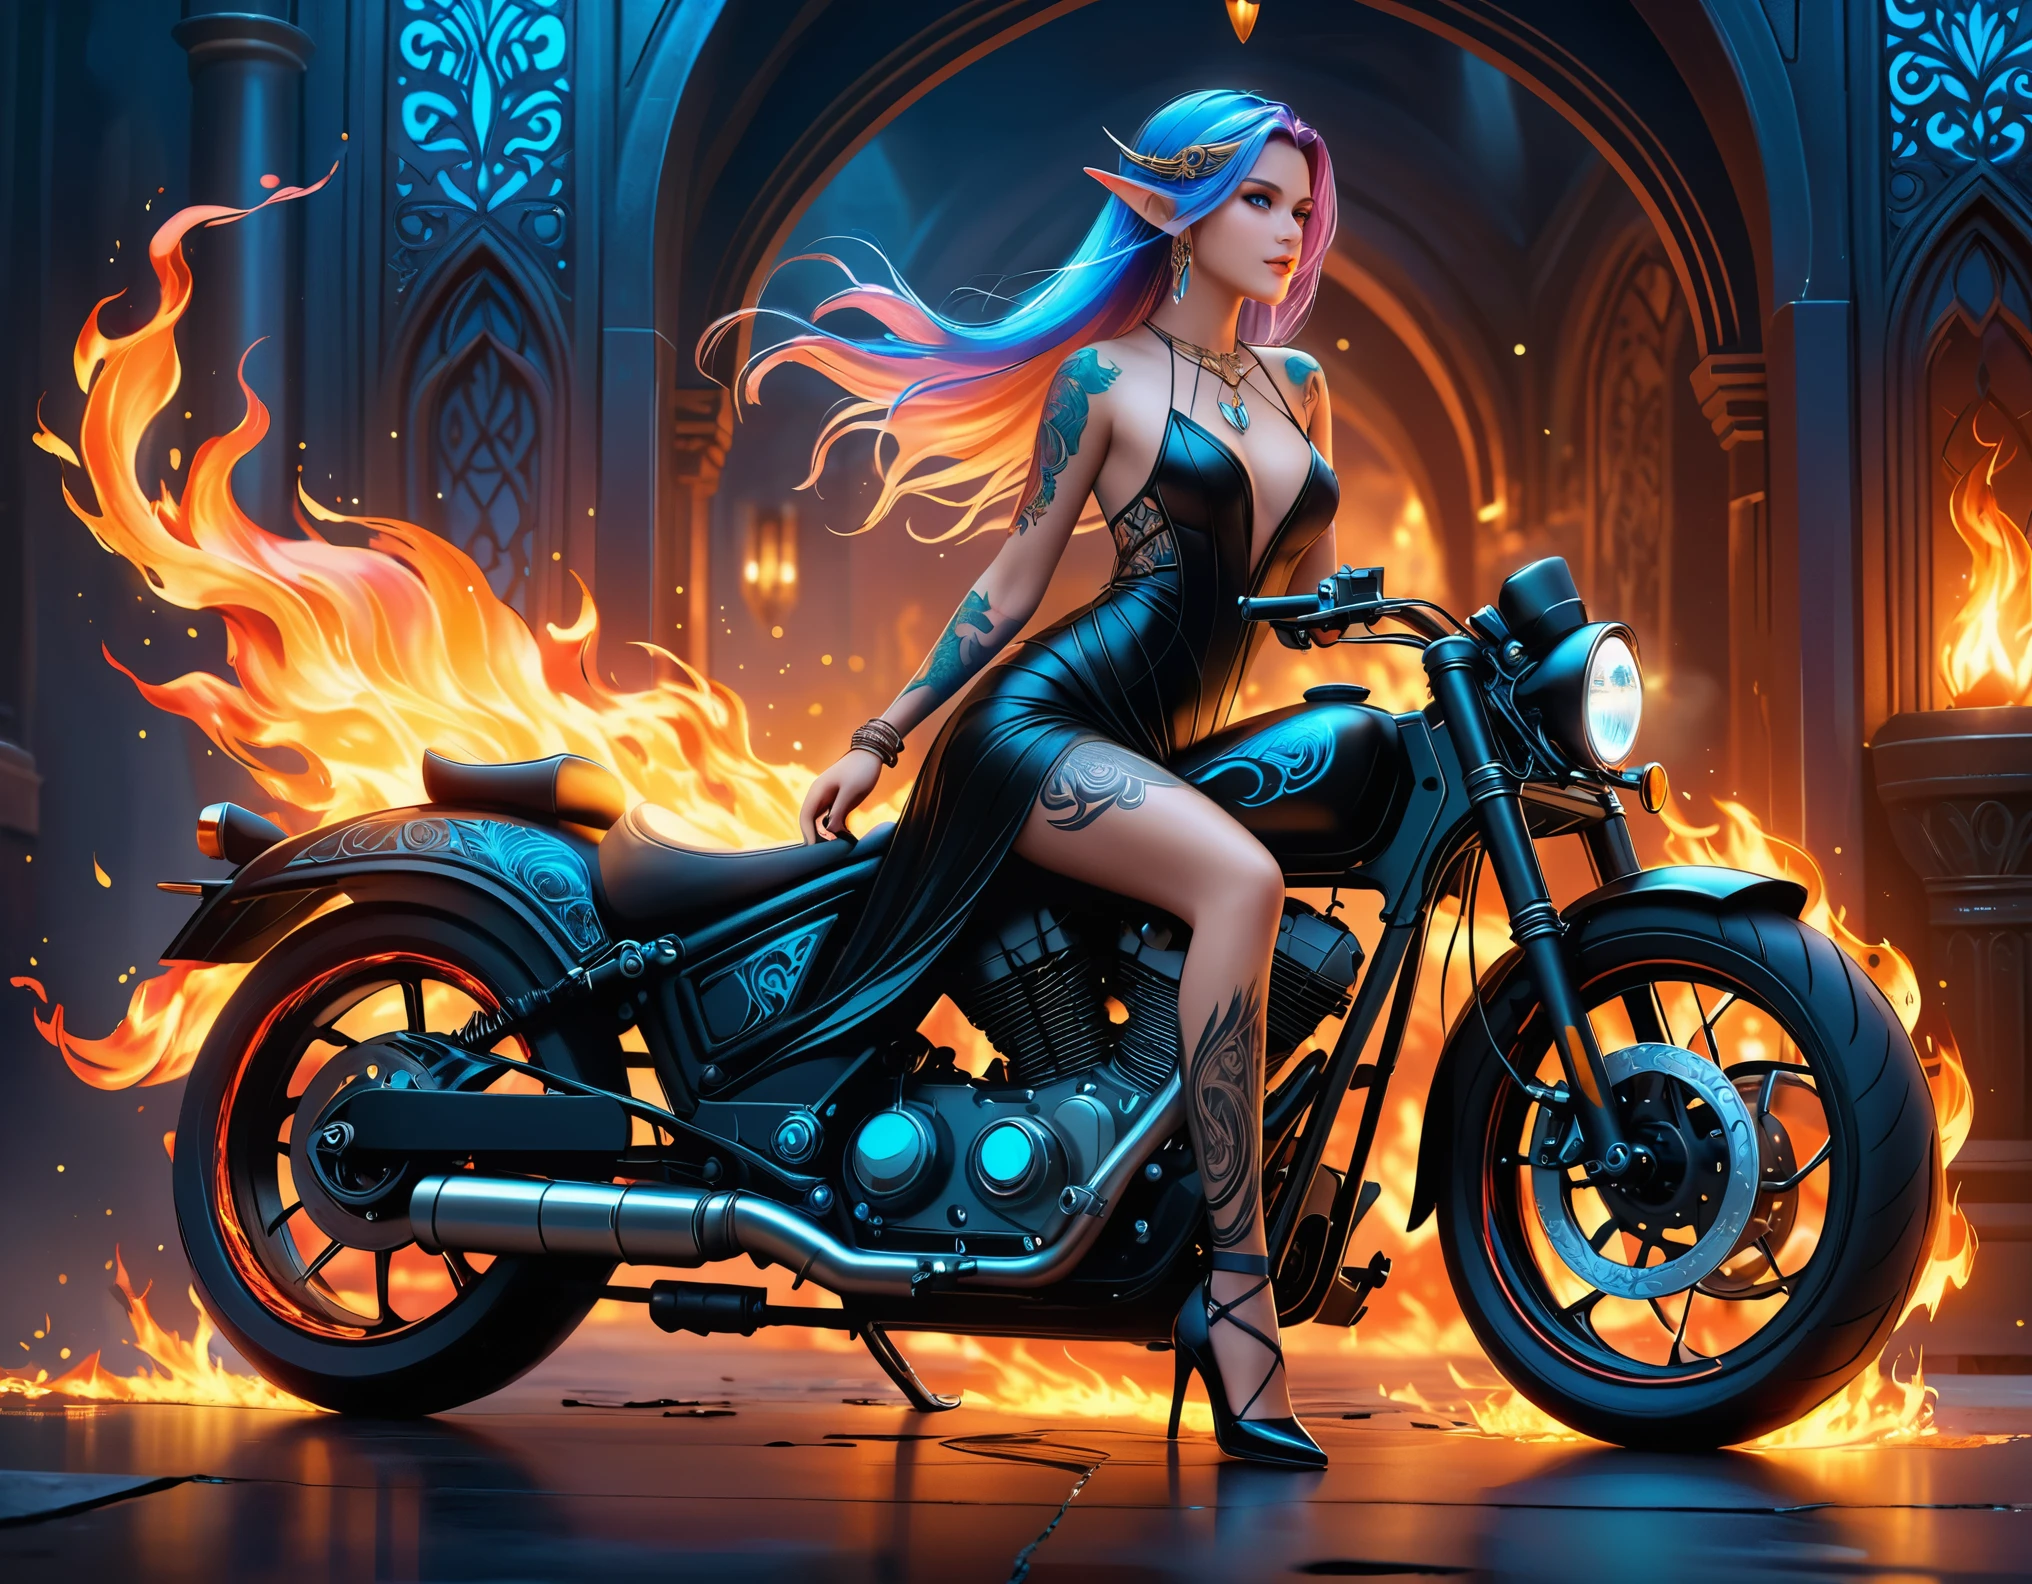 Arabisch, Dark Fantasy-Kunst, Fantasy-Kunst, Gothic Kunst, ein Bild einer tätowierten Elfe neben ihrem Motorrad (Meisterwerk, am besten detailliert, Ultra-Detail: 1.5)  Das Tattoo lebt, komplizierte Details werden durch die Tinte zum Leben erweckt, GlühendeRunenAI_blass_Blau, ((Feuer umgibt das Motorrad: 1.5)), ultrafeminin, ((schönes zartes Gesicht)), Ultradetailliertes Gesicht, kleine spitze Ohren, dynamischer Winkel, ((die Rückseite ist sichtbar: 1.3), sie trägt ein transparentes schwarzes Kleid, das Kleid ist elegant, fließend, Elfenstil, dass die Tattoos leuchten, dynamische Haarfarbe, Dynamische Frisur, hohe Details, beste Qualität, 16K, [ultra-detailliert], Meisterwerk, beste Qualität, (extrem detailliert), dynamischer Winkel, Ganzkörperaufnahme, Interessiert, Etwas abonnieren, digitale Zeichnung